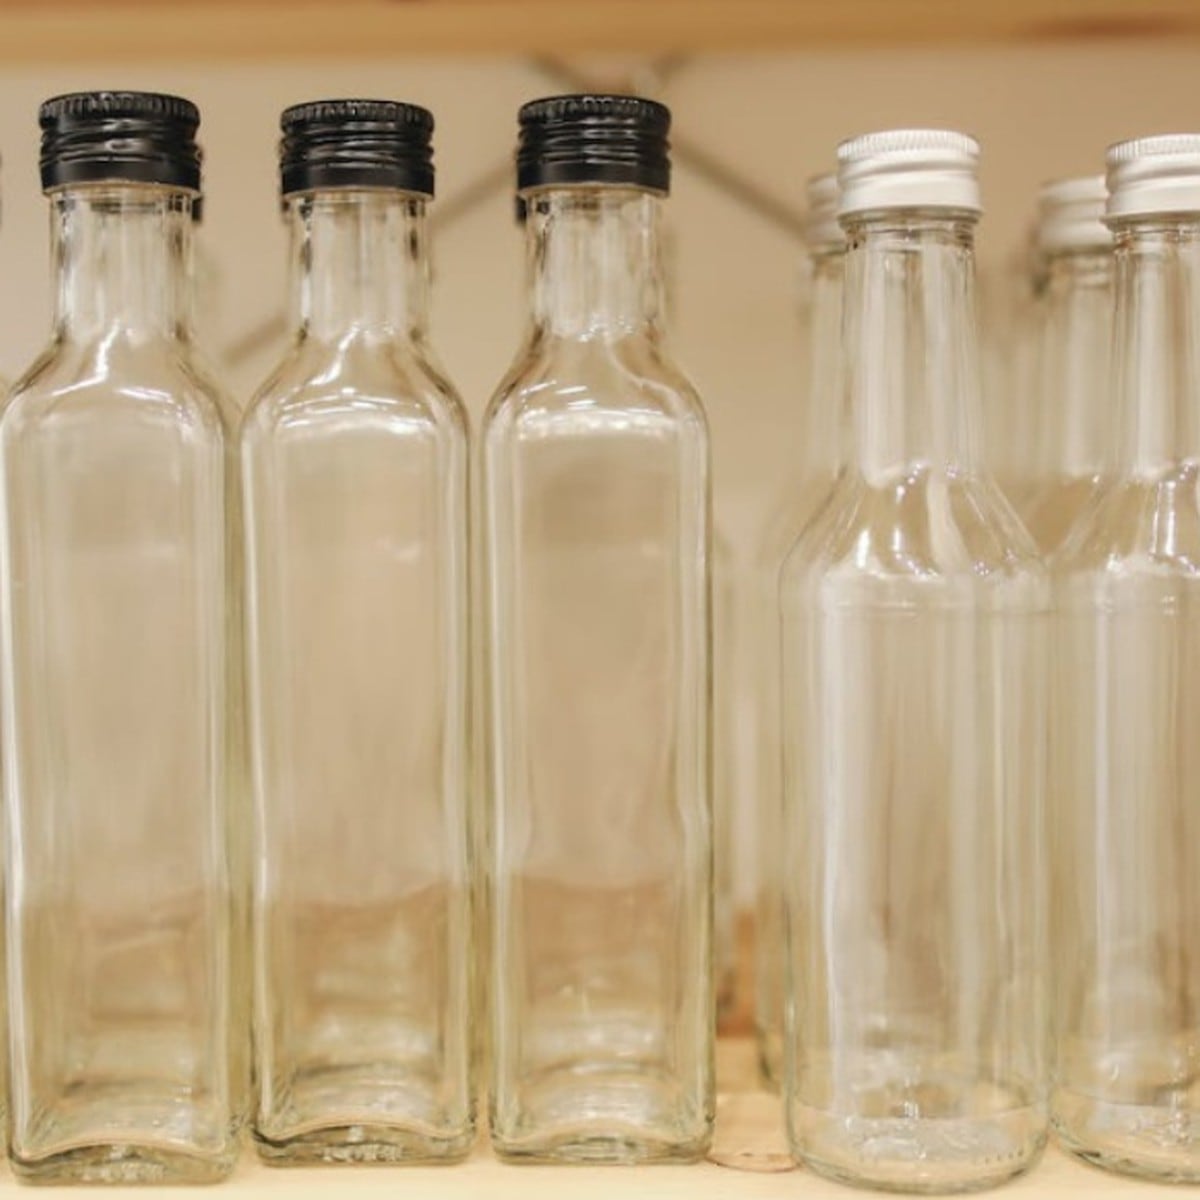 Cómo limpiar por dentro las botellas de vidrio